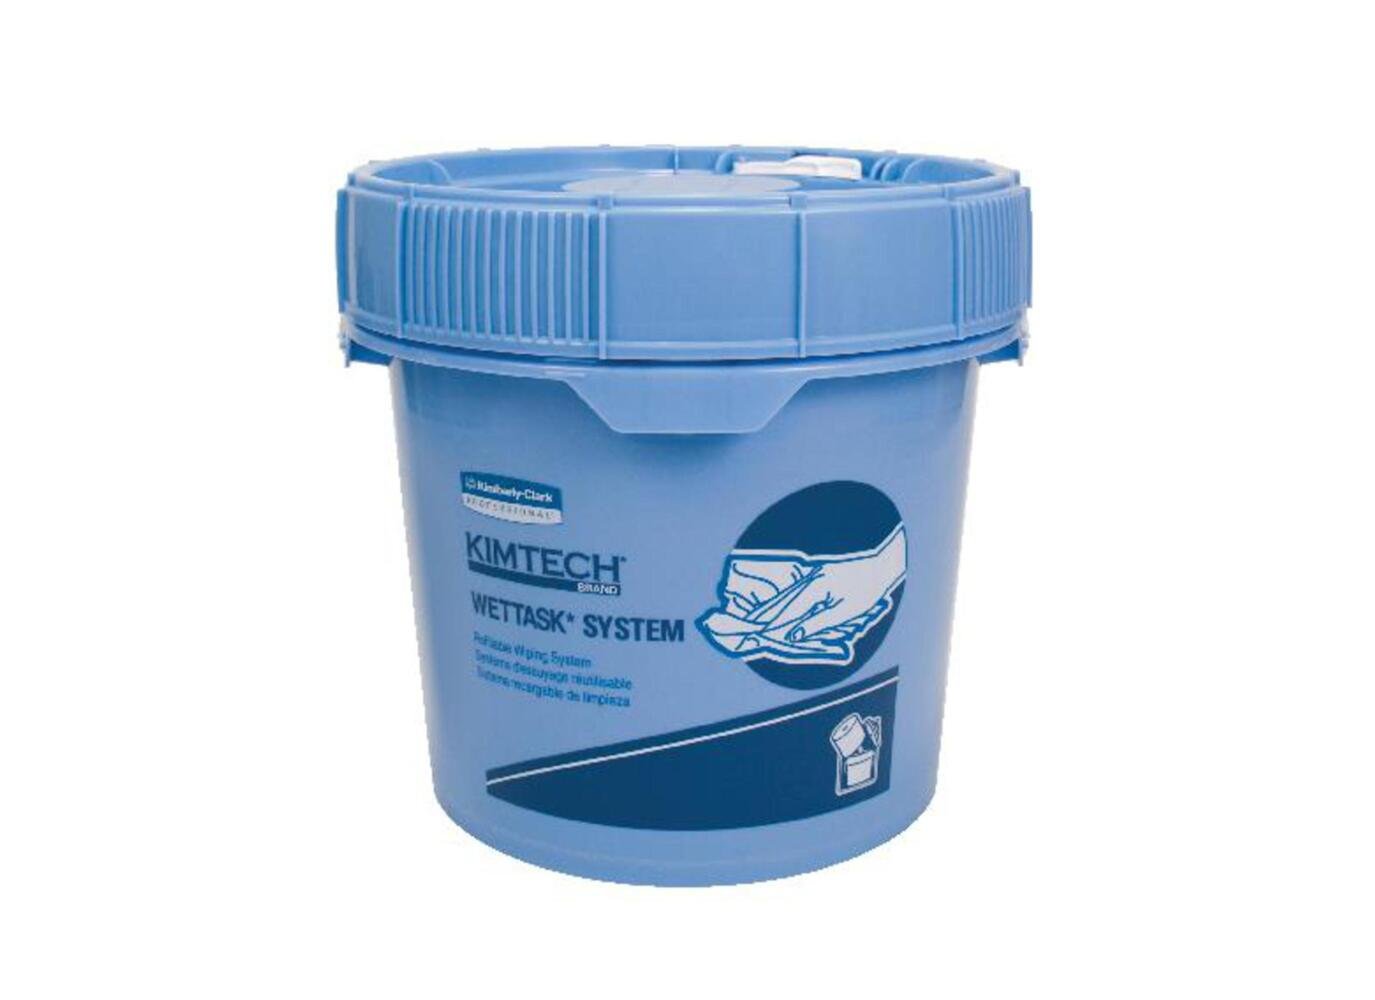 Kimtech® Wettask™ Spendereimer für Rollenwischtücher 7929 – 2 x 1 blauer Eimer - 7929